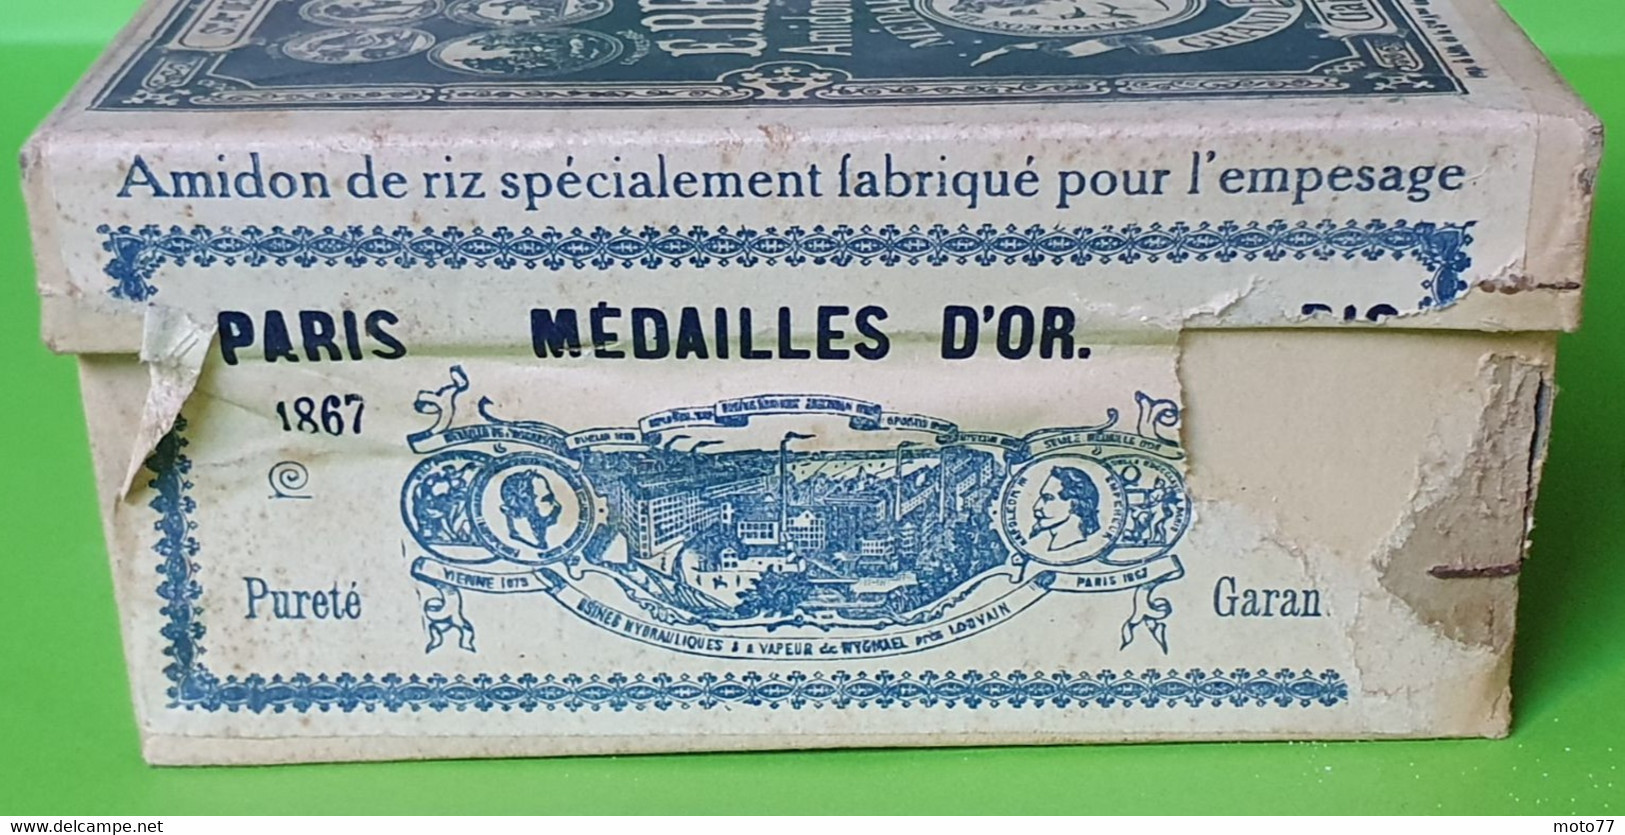 Ancienne BOITE carton pleine n2- Publicité AMIDON REMY - Tête de Lion - Prix Exposition Paris 1867 1878 1889 - vers 1900